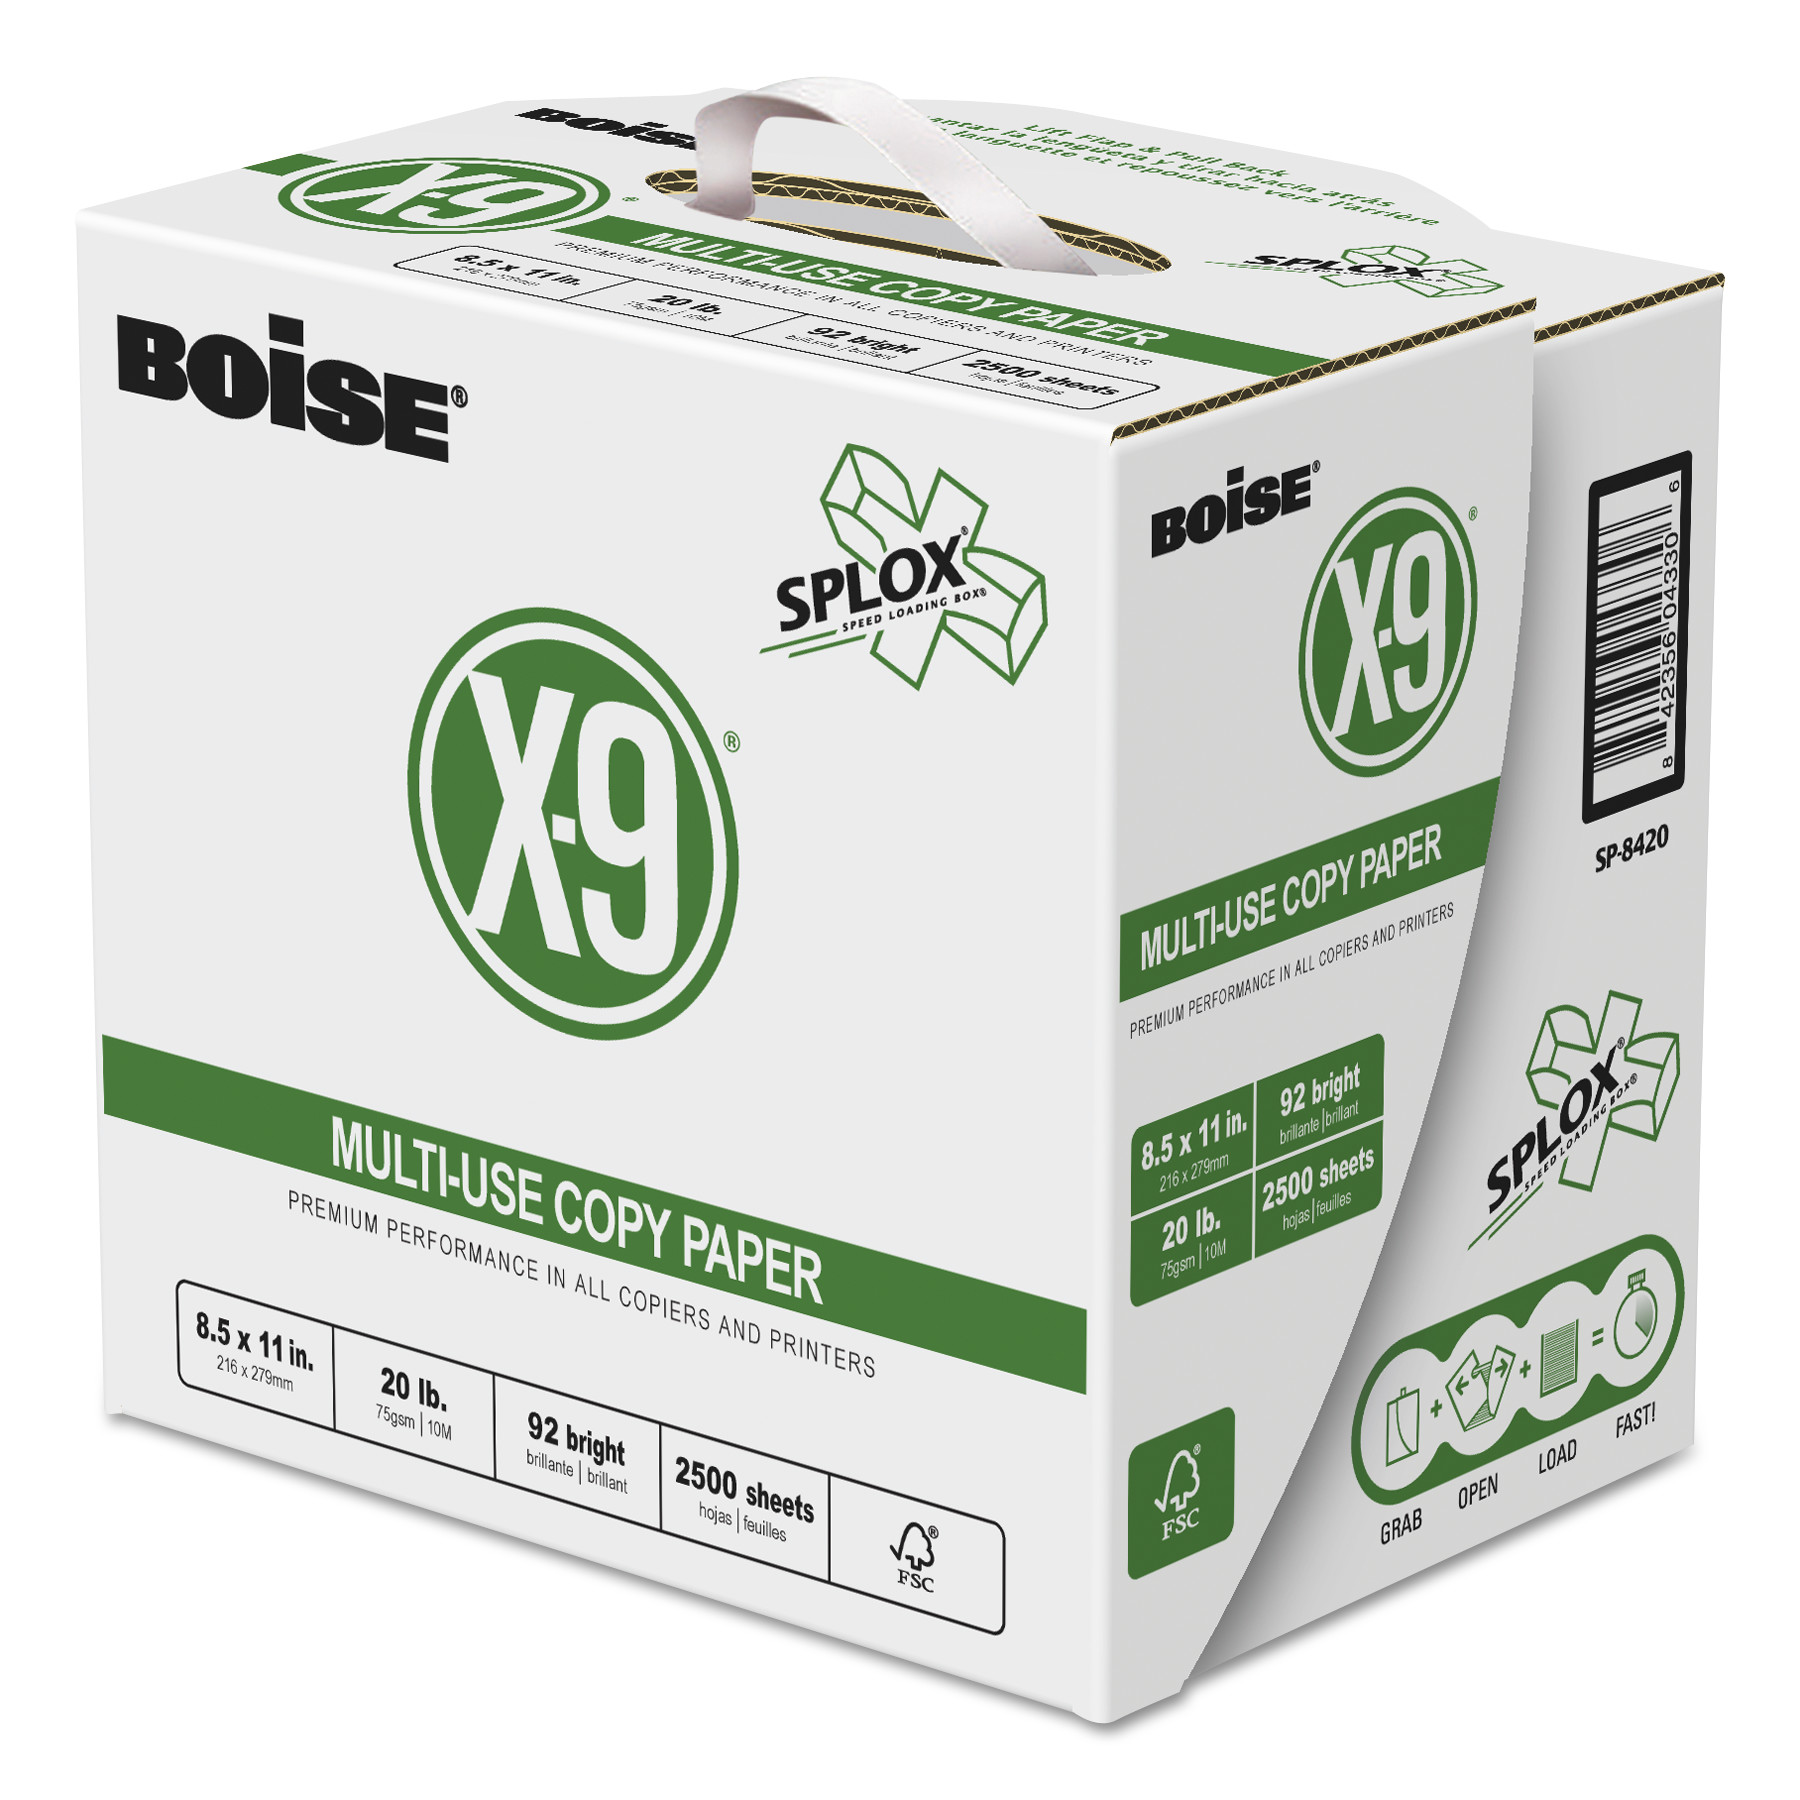  Boise SP-8420PLT X-9 SPLOX Multi-Use Paper , 92 Bright, 20 lb, 8.5 x 11, White, 2500 Sheets/Carton, 80 Cartons/Pallet (CASSP8420PLT) 